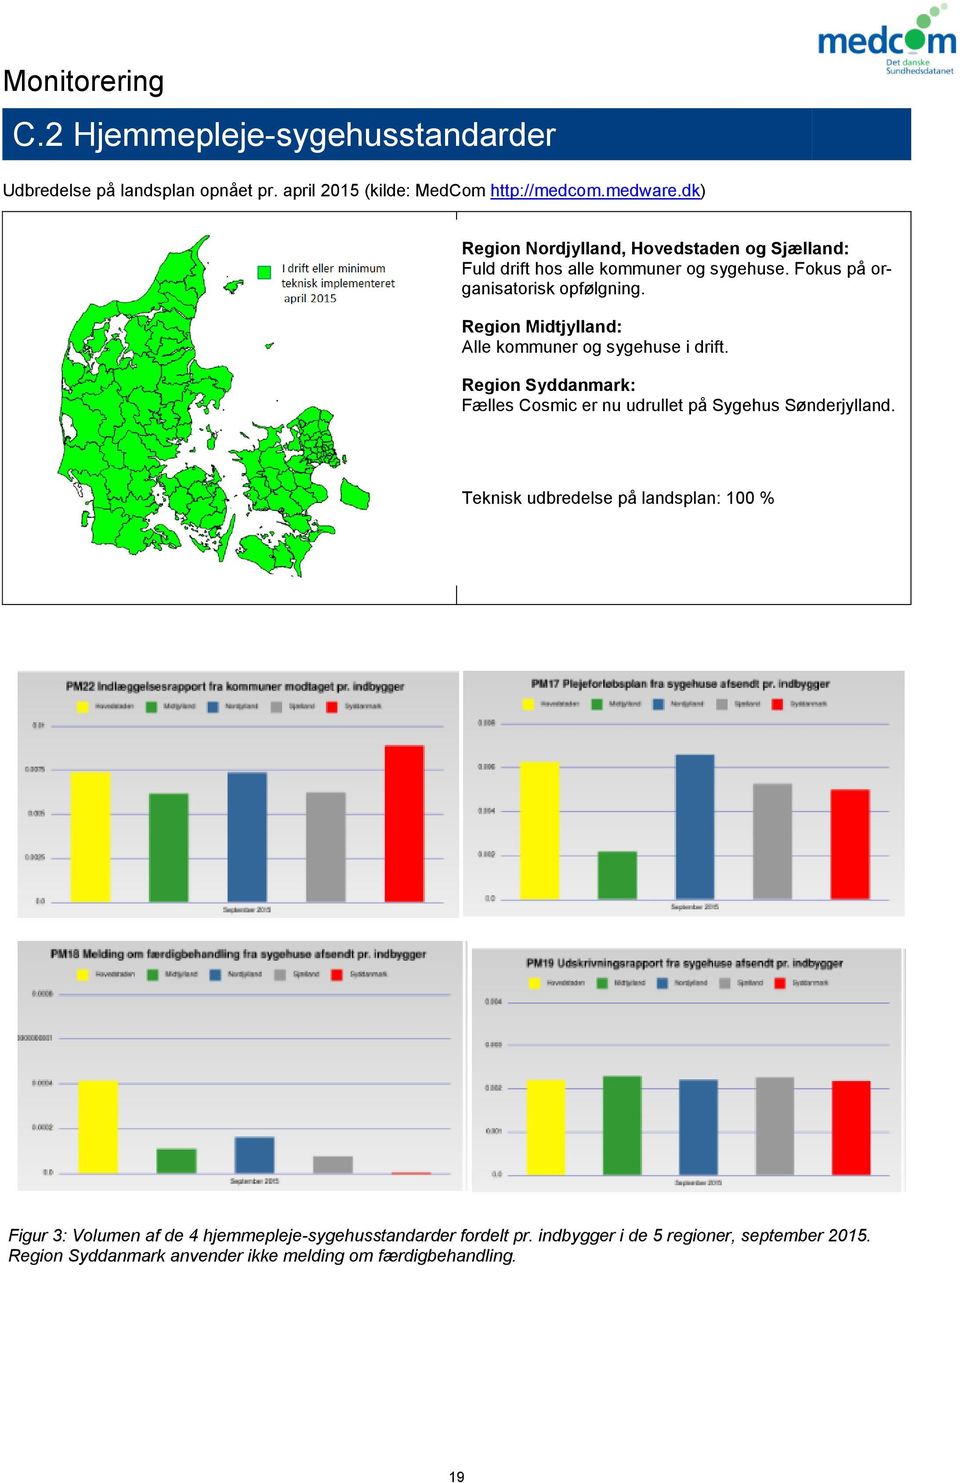 Region Midtjylland: Alle kommuner og sygehuse i drift. Region Syddanmark: Fælles Cosmic er nu udrullet på Sygehus Sønderjylland.